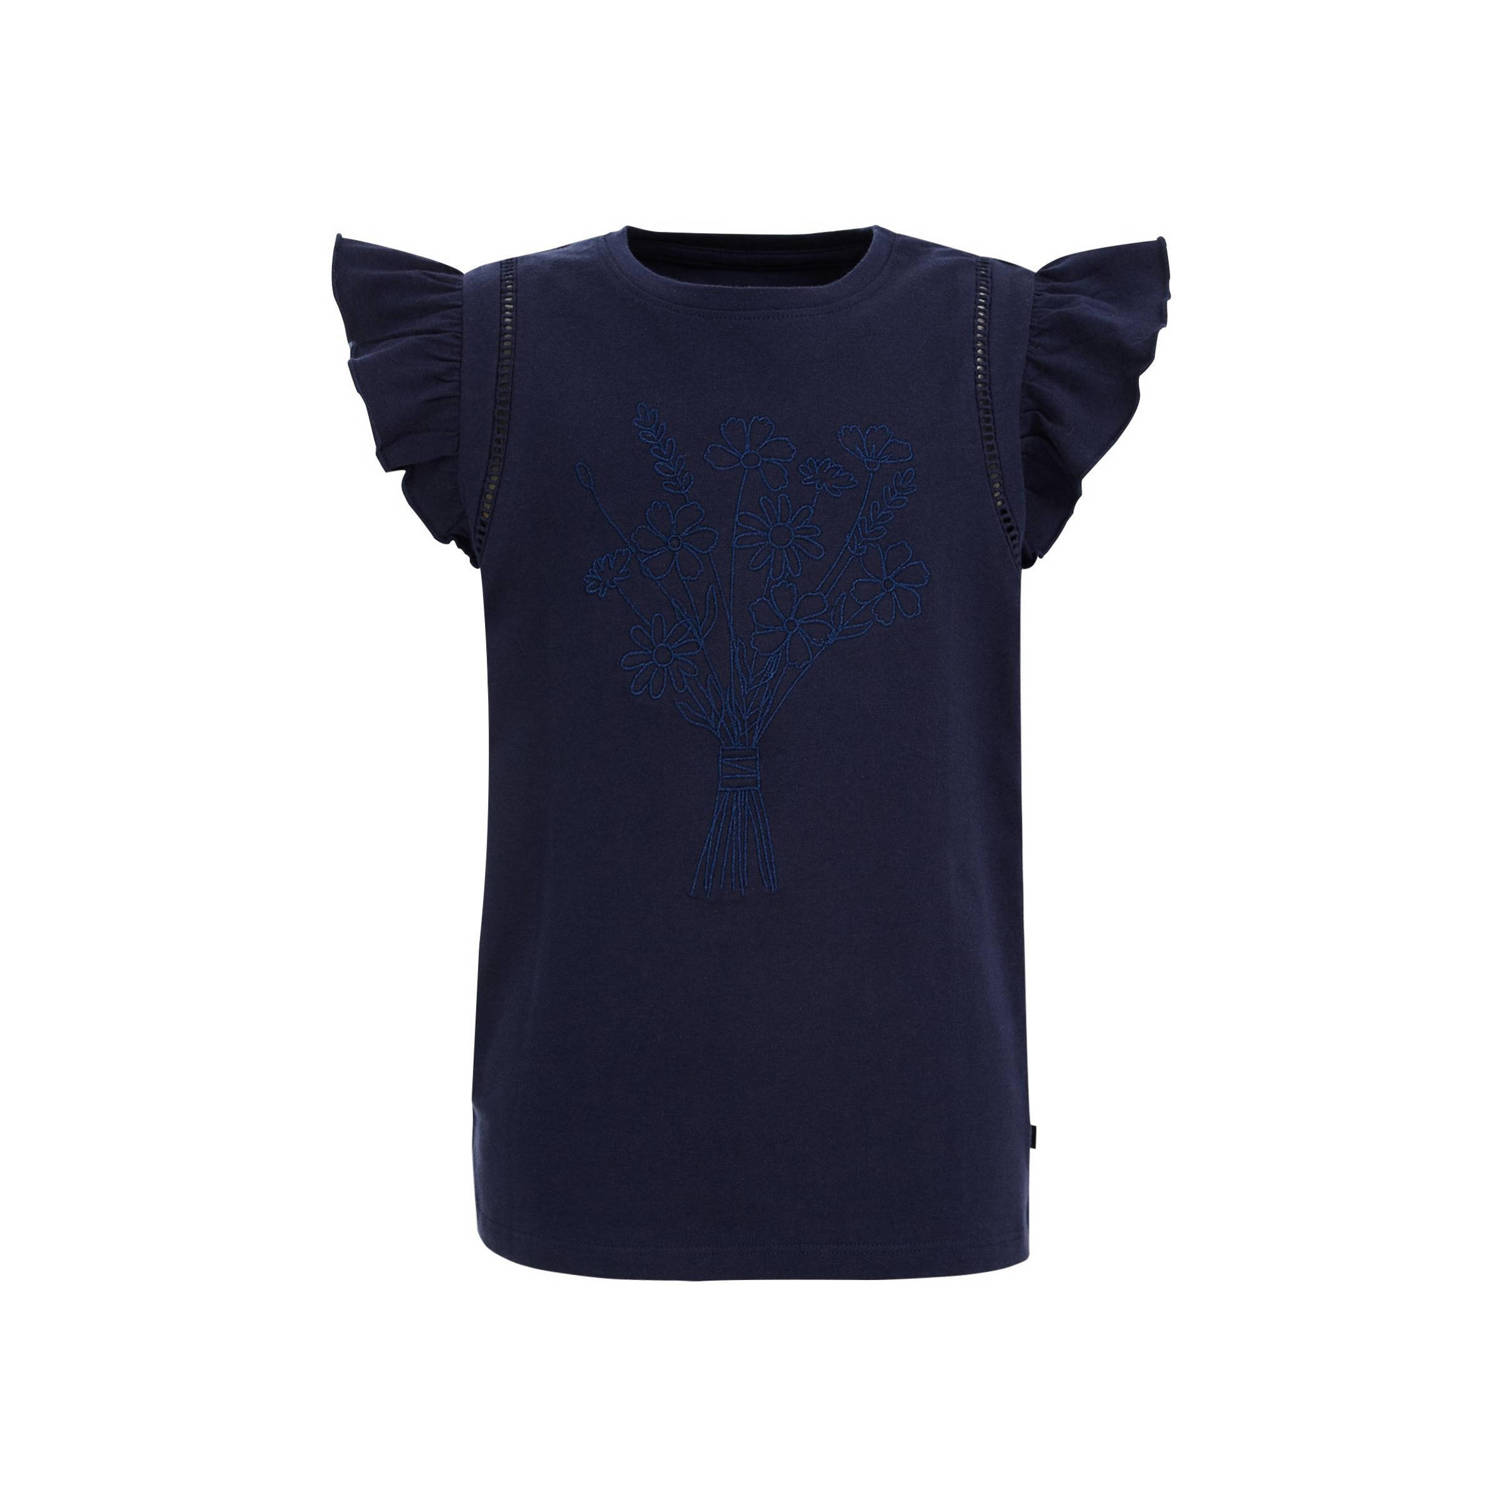 WE Fashion T-shirt donkerblauw Meisjes Stretchkatoen Ronde hals Effen 122 128